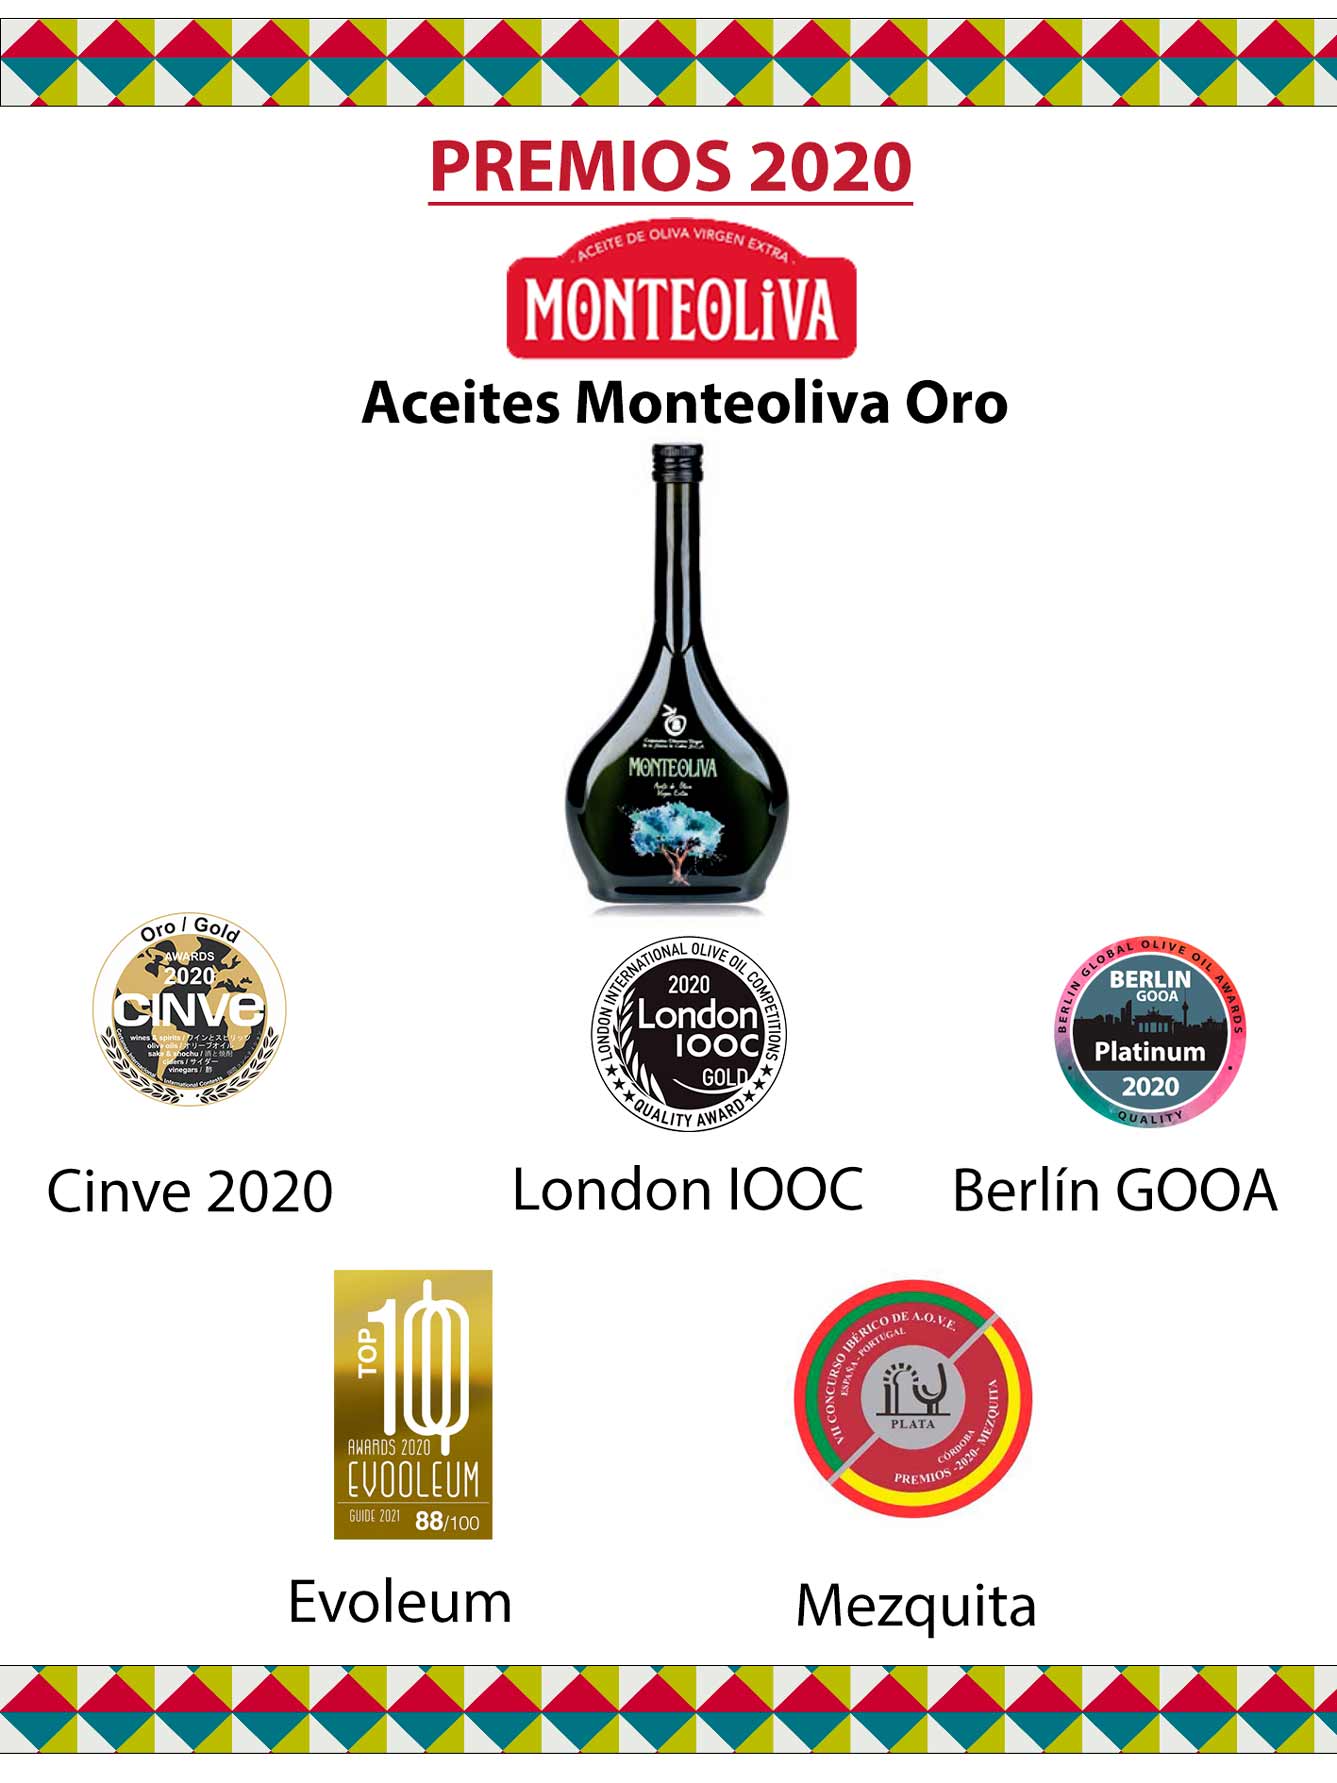 Premios que han recibido los aceites Monteoliva durante el año 2020 - 2